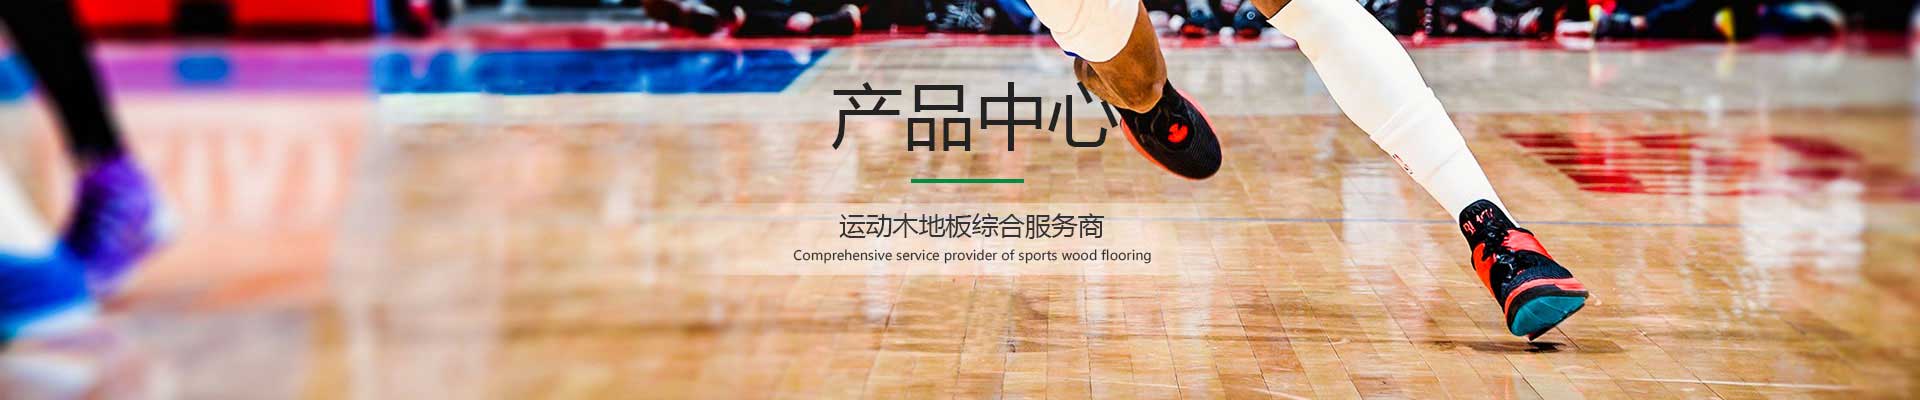 欢迎来到公海555000,篮球木地板厂家